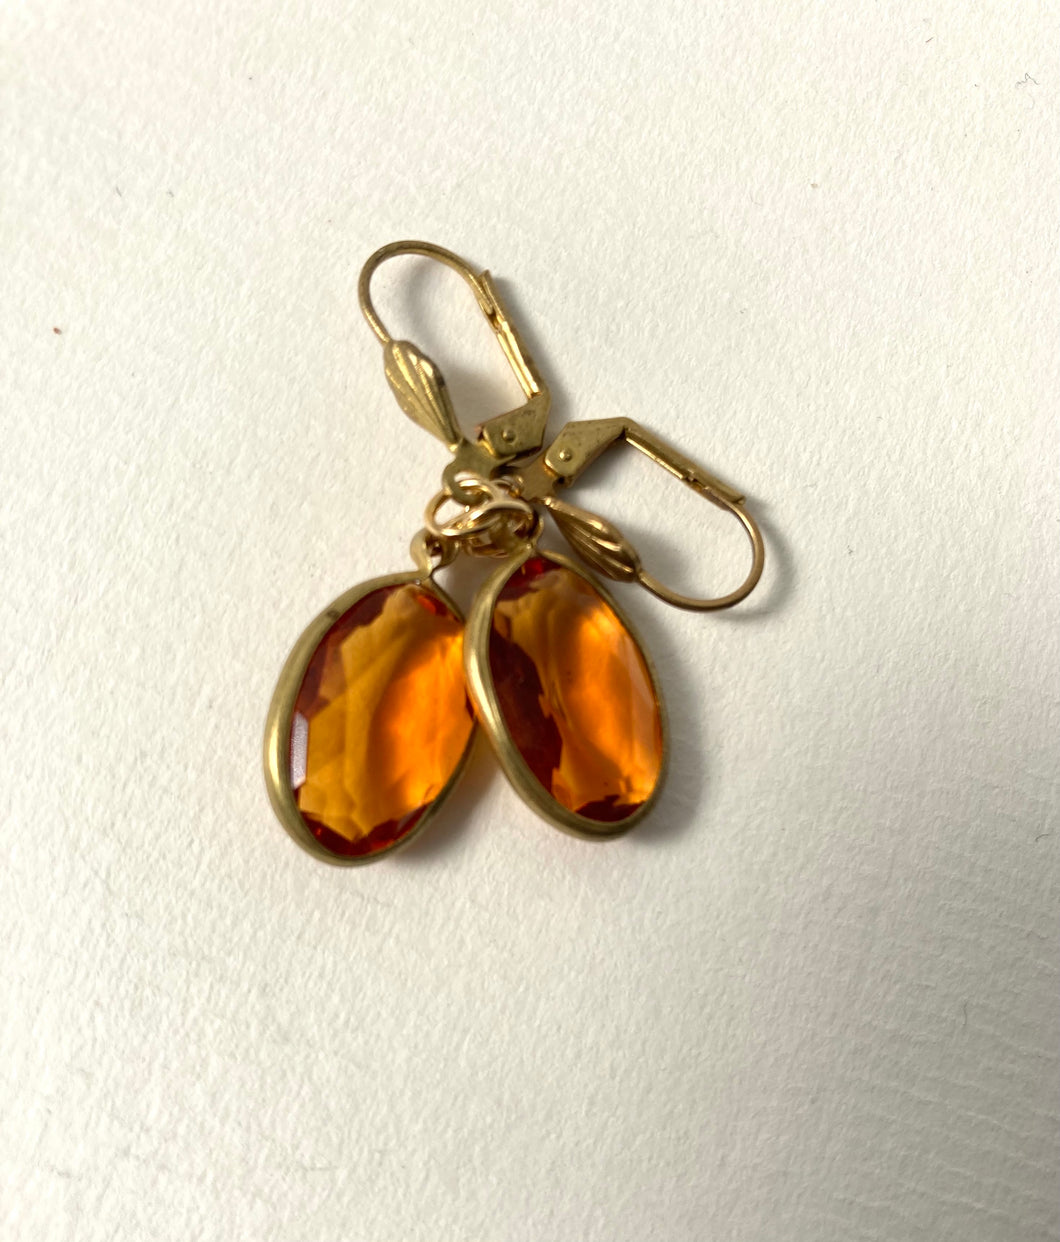 Amber Oval Cut Gem Earrings, Acrylic Channel set Amber glass, Faux Topaz earrings